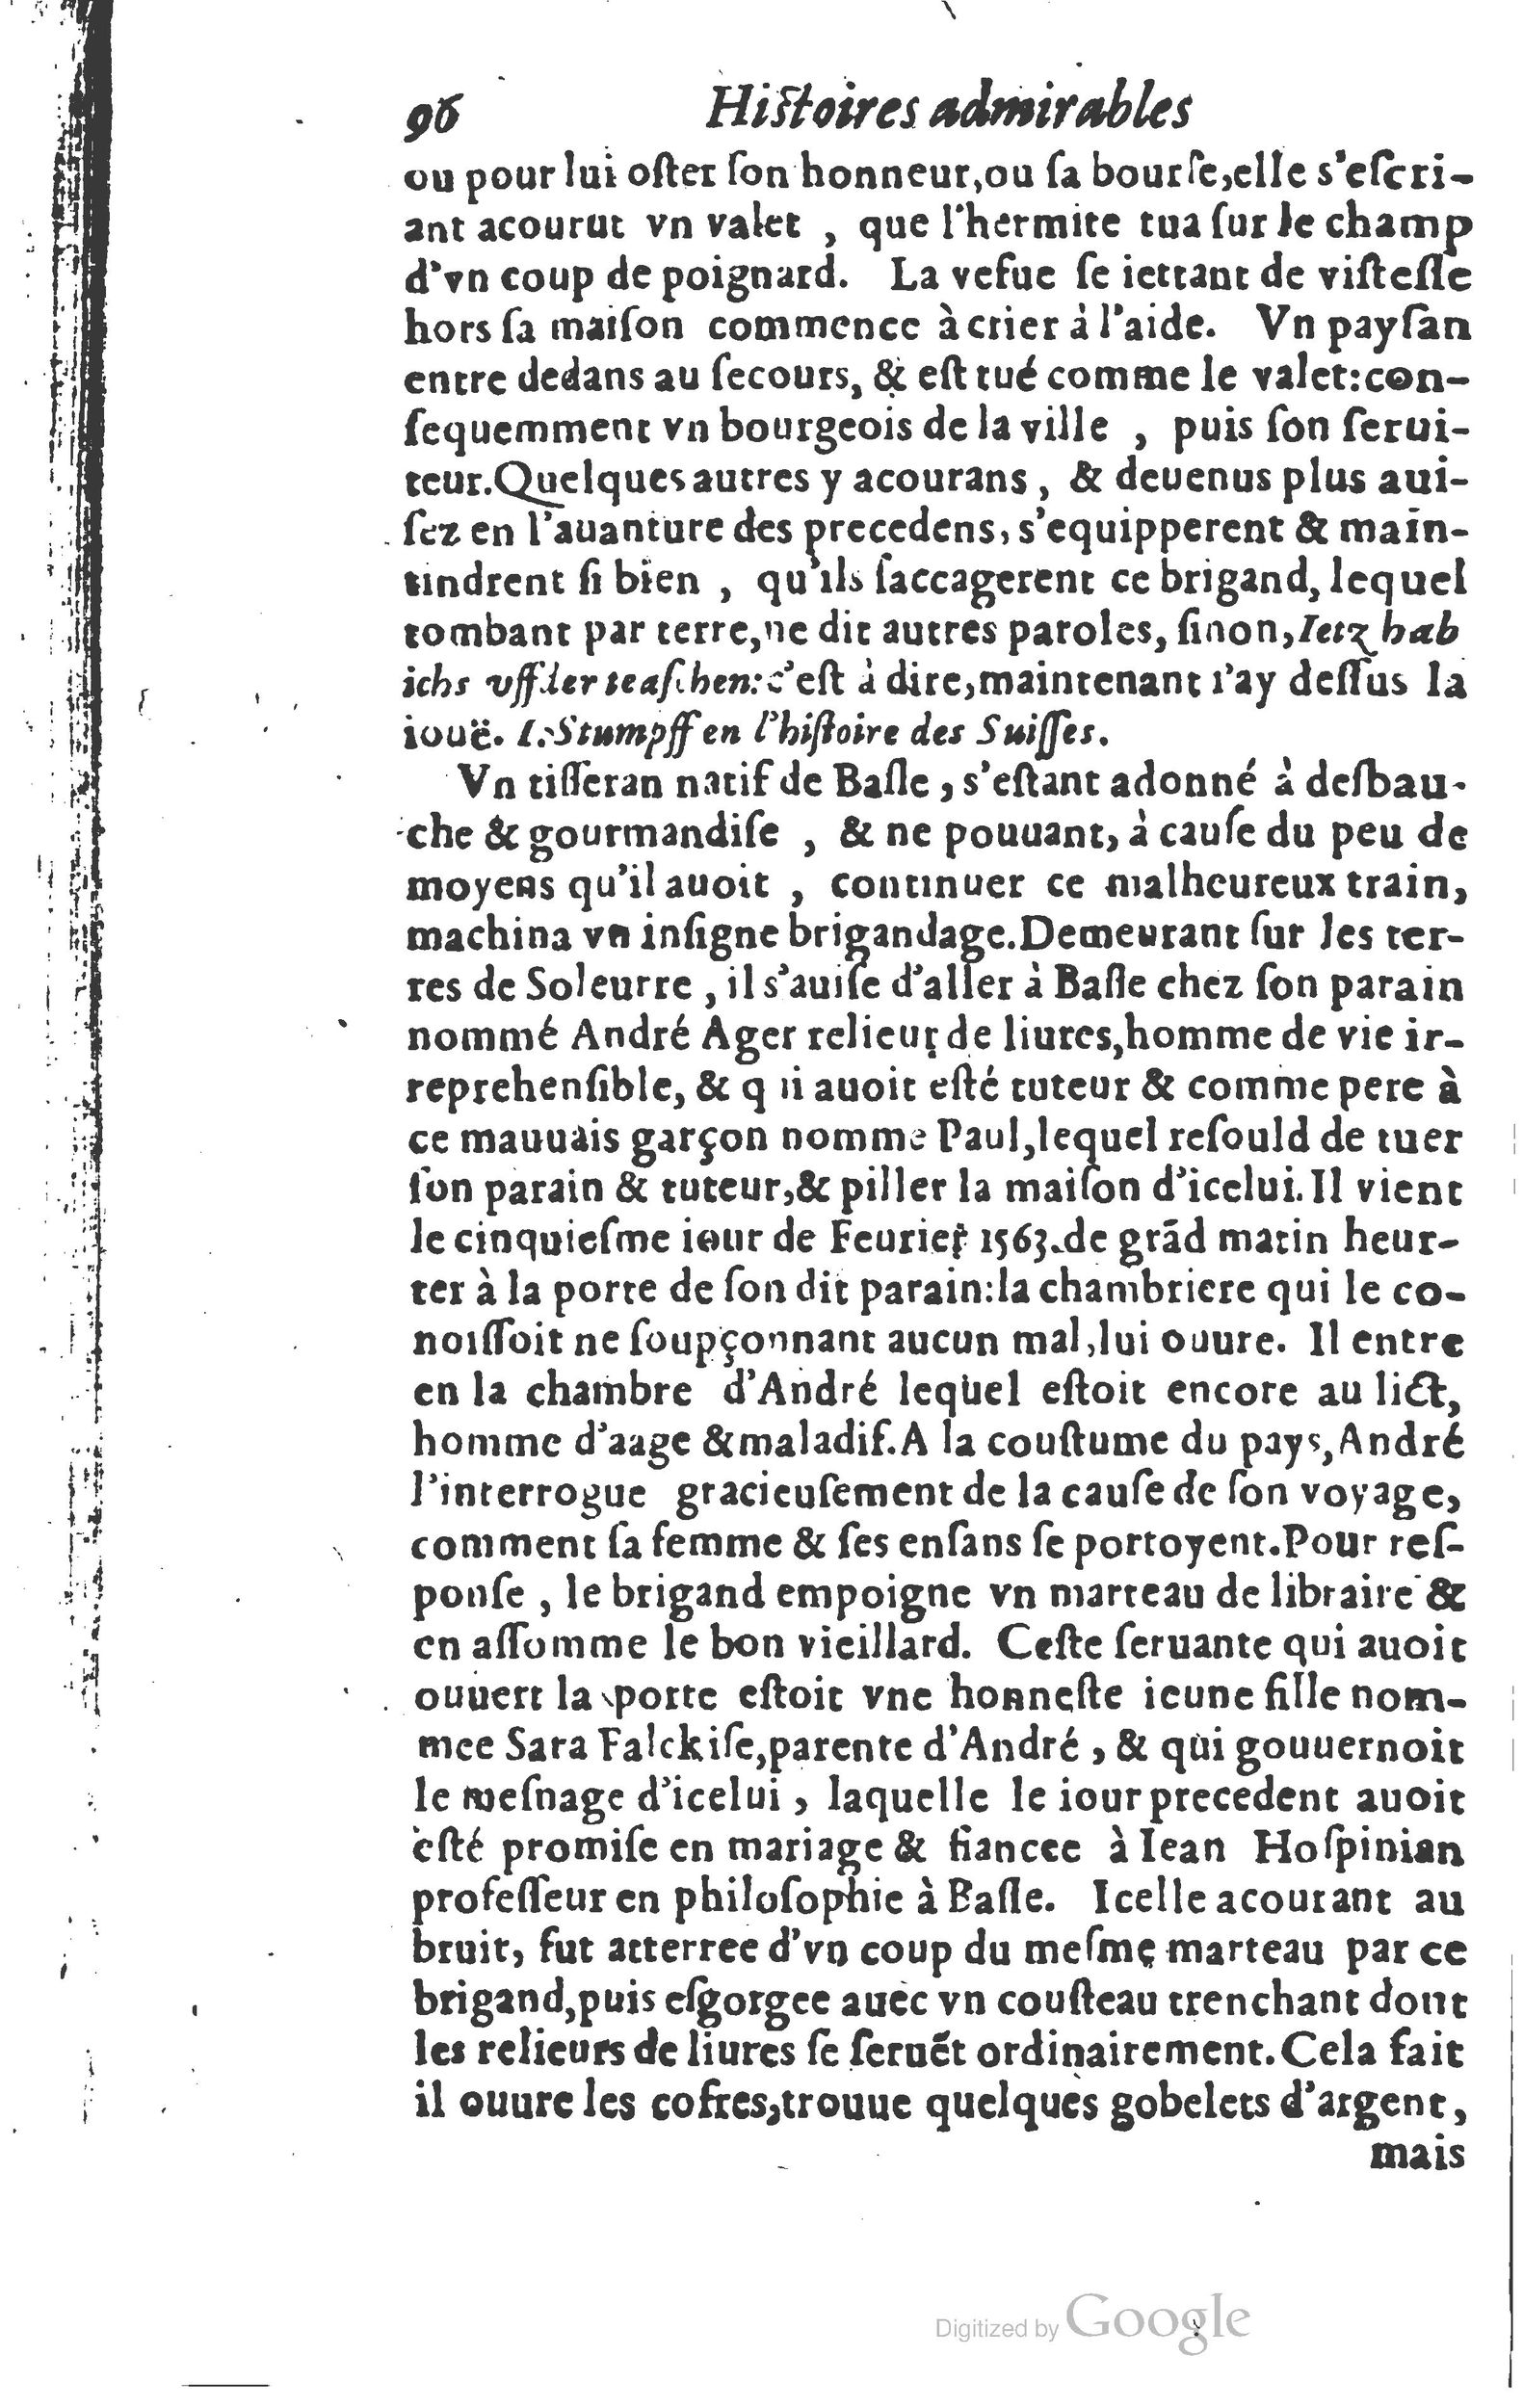 1610 Trésor d’histoires admirables et mémorables de nostre temps Marceau Princeton_Page_0117.jpg